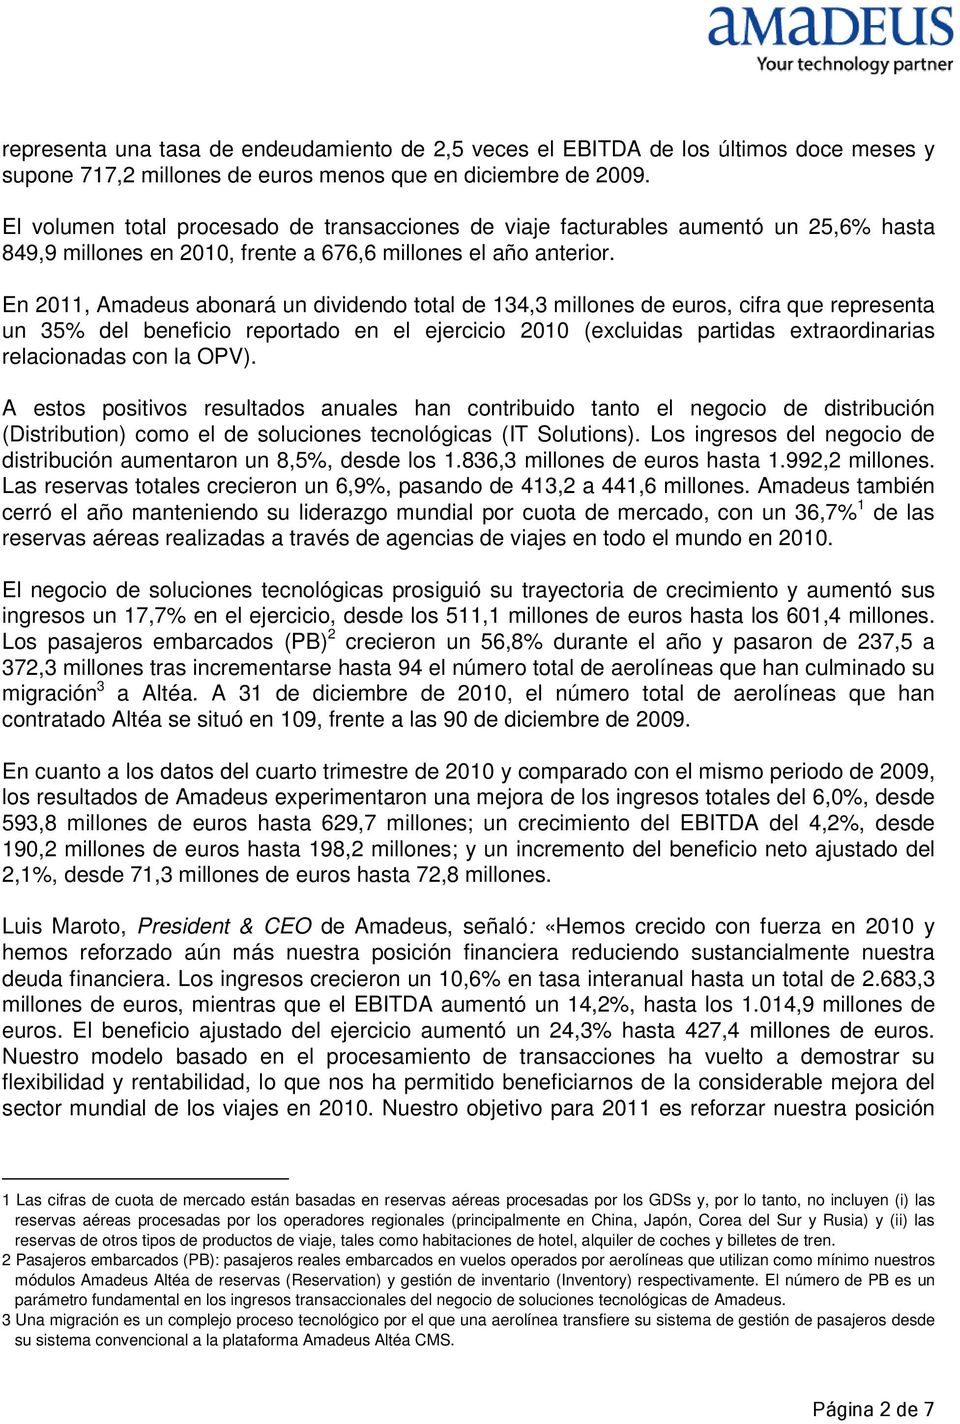 En 2011, Amadeus abonará un dividendo total de 134,3 millones de euros, cifra que representa un 35% del beneficio reportado en el ejercicio 2010 (excluidas partidas extraordinarias relacionadas con